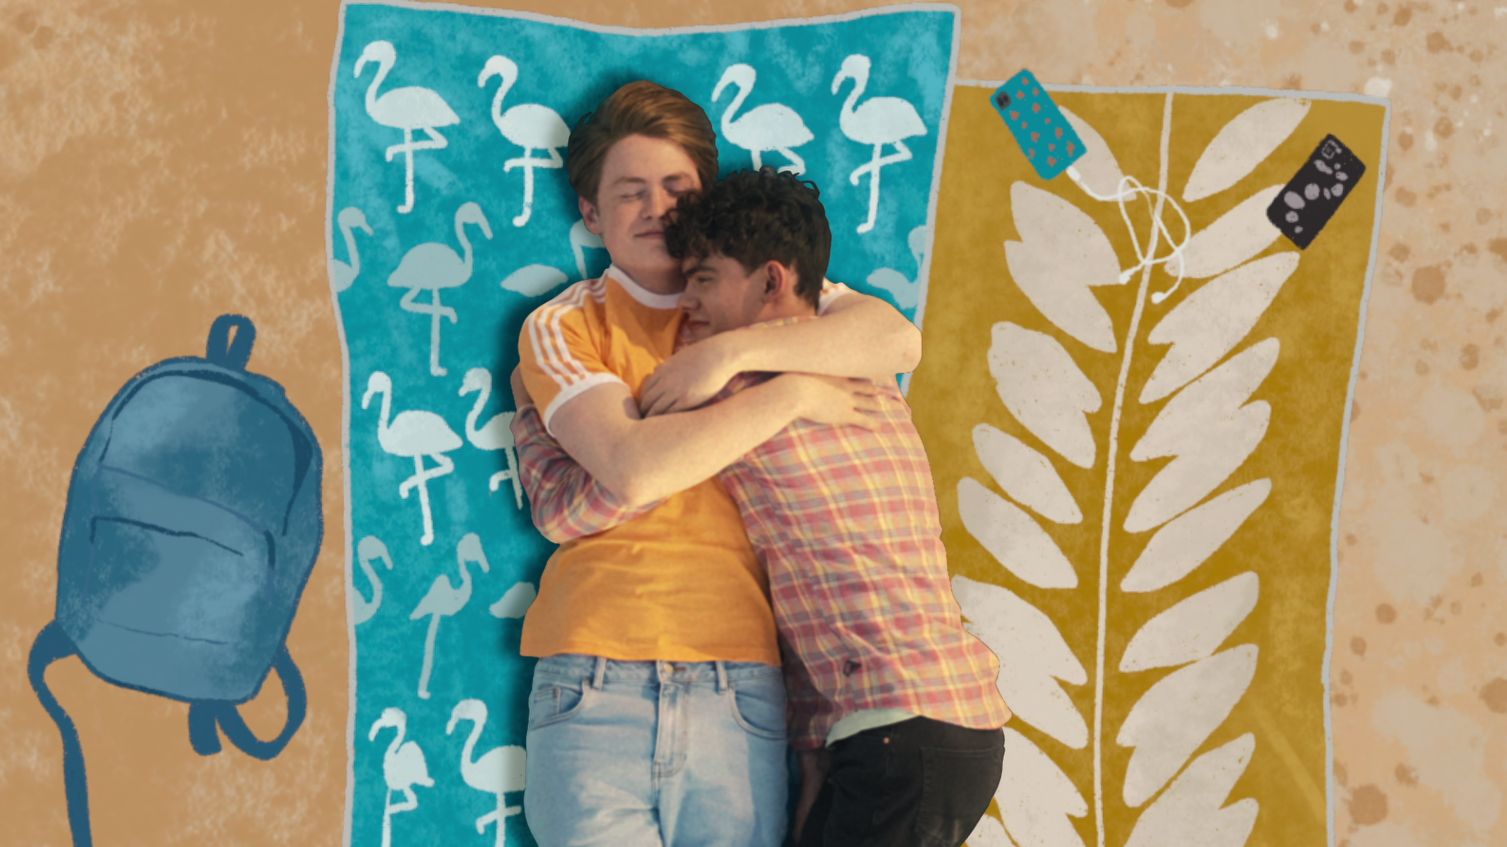 El romance de Charlie y Nick permite juntar las perspectivas de un joven abiertamente gay y otro que aún está entendiendo su sexualidad. (Netflix)